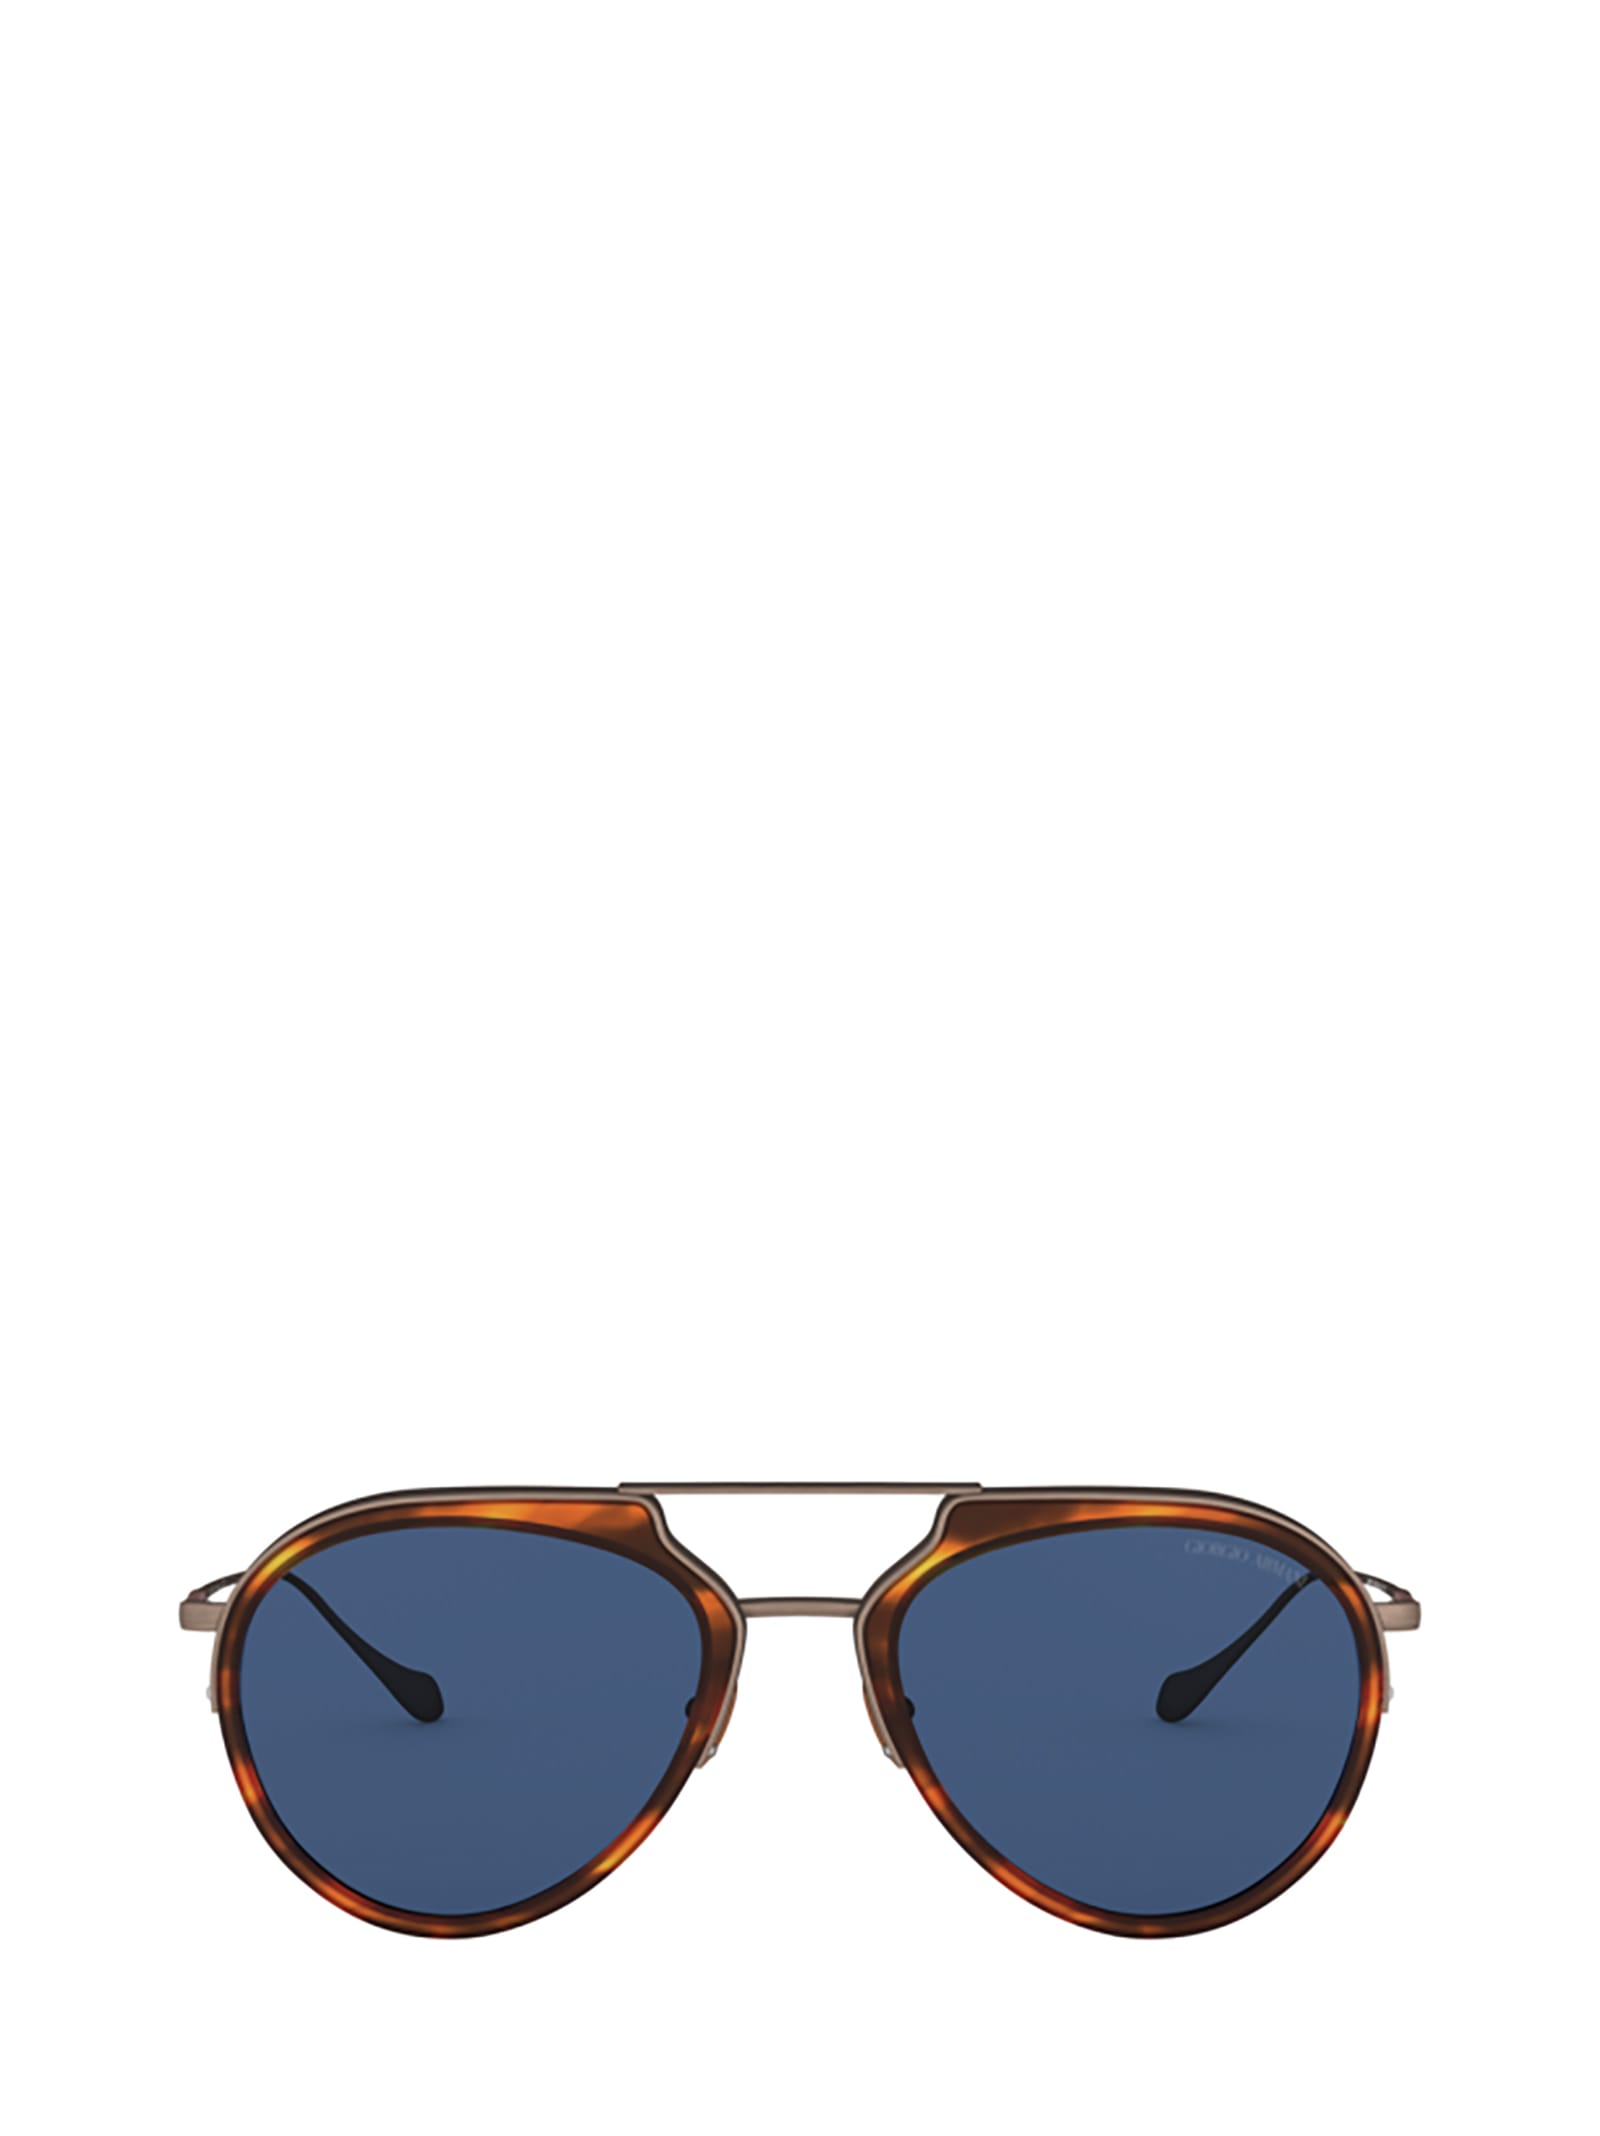 Giorgio Armani Giorgio Armani Ar6097 Striped Brown / Brushed Bronze Sunglasses